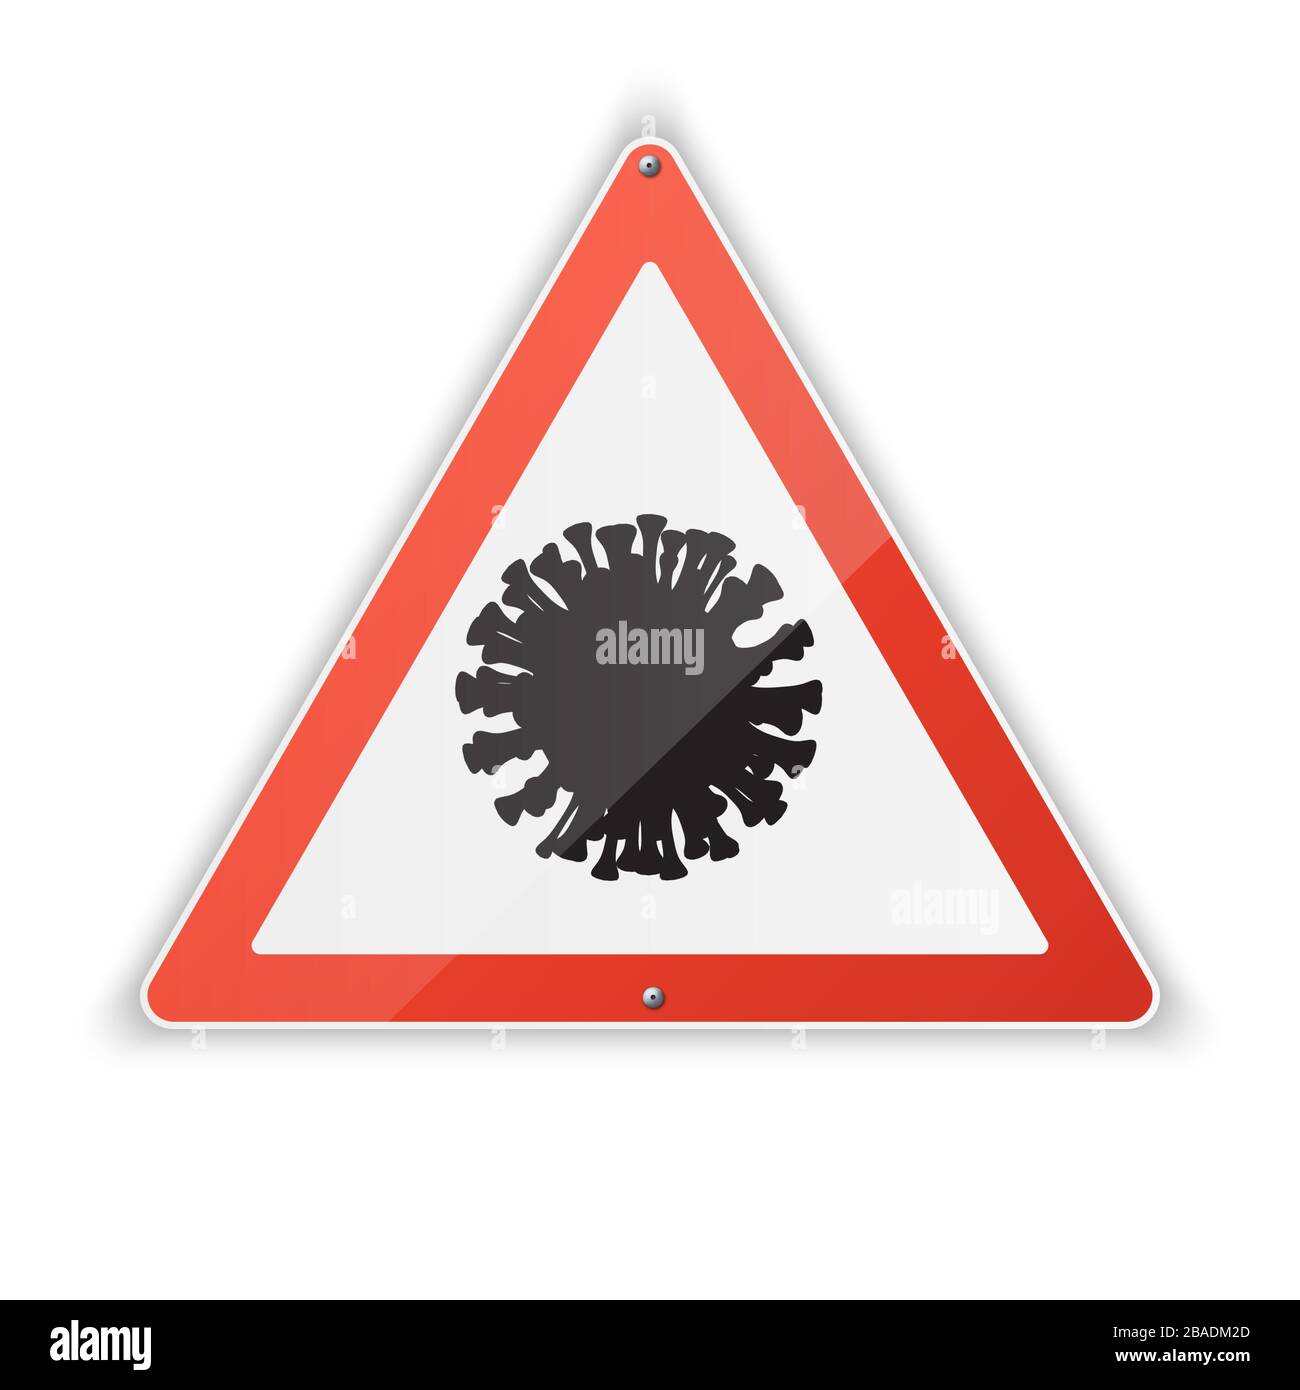 Realistische Dreieckssymbole des Coronavirus mit einem roten Warnschild über die Gefahr einer Coronovirus-Infektion. Covid-19. Stock Vektor